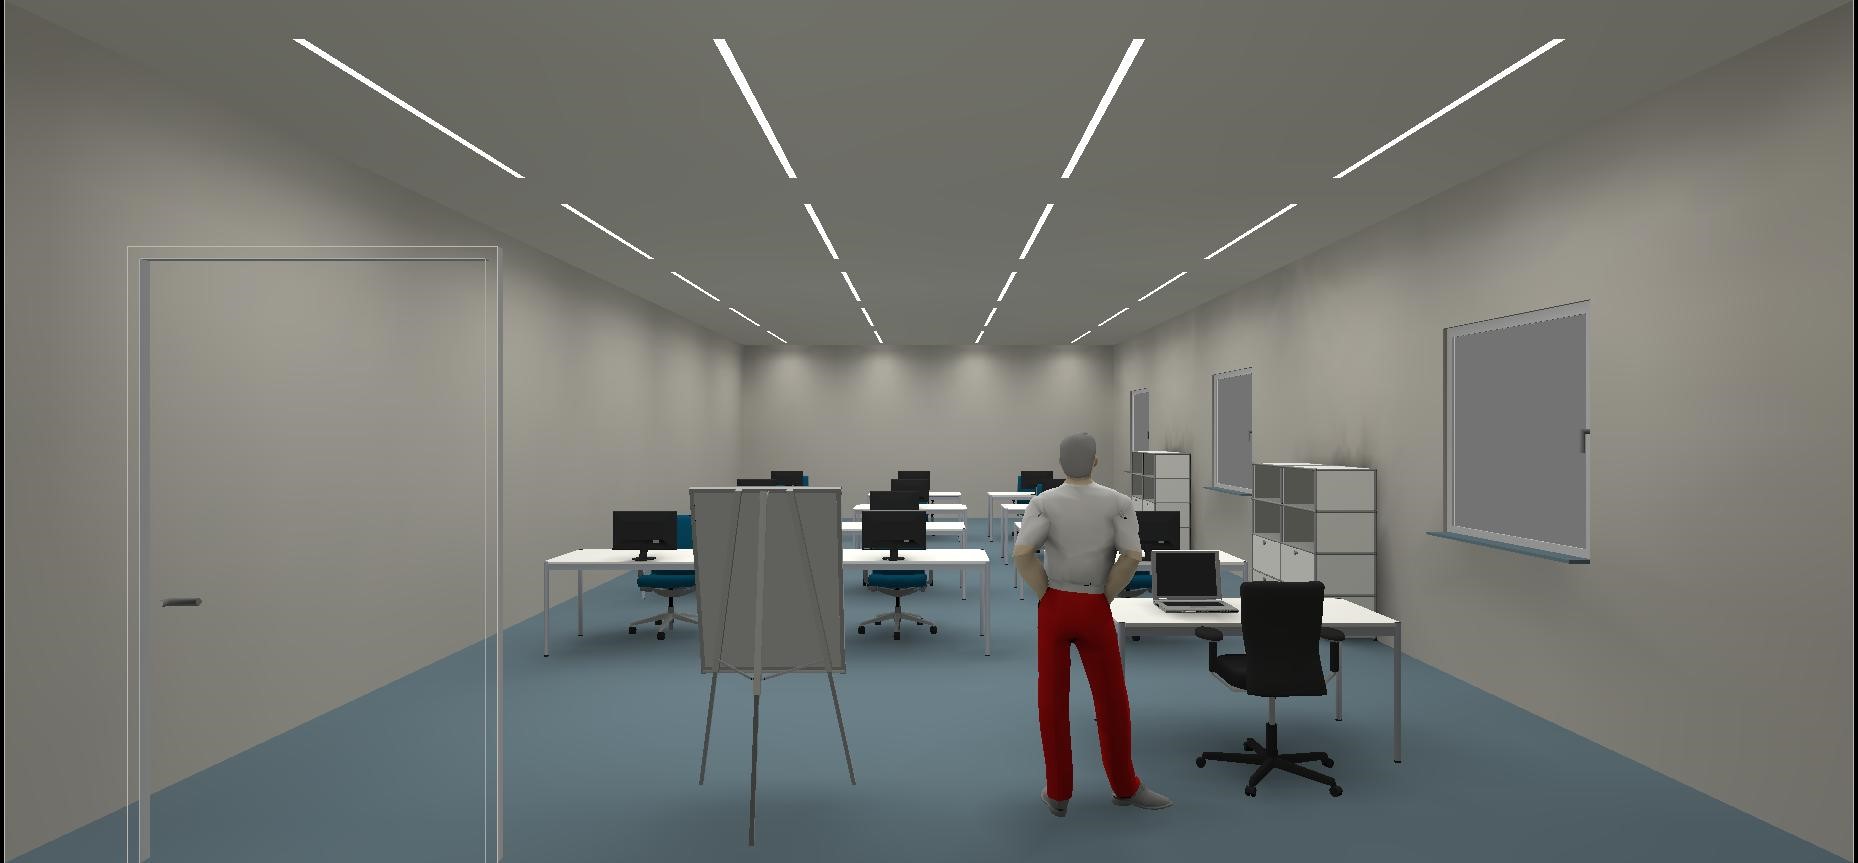 Lighting design offer for educational premises